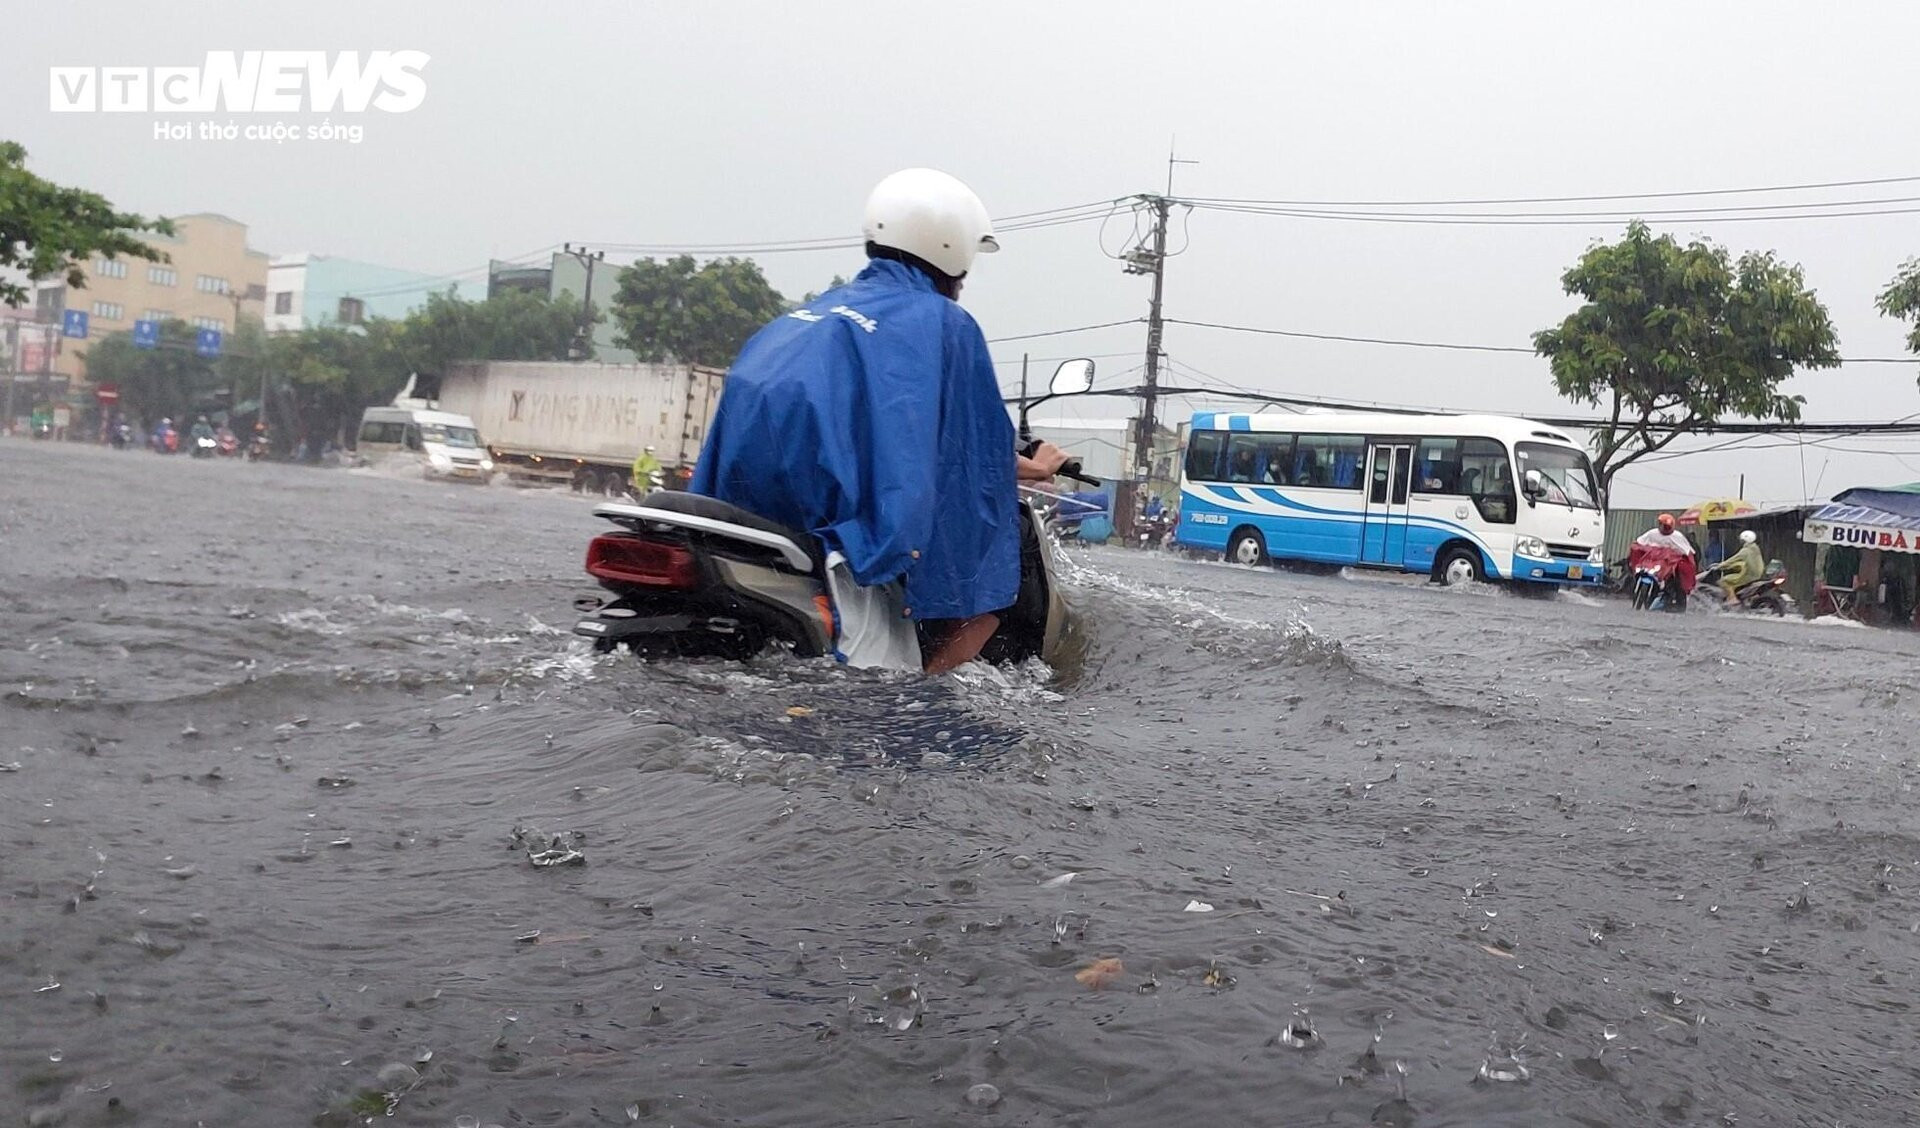 Đường phố Đà Nẵng thành sông sau mưa lớn, dân khổ sở đẩy xe giữa biển nước  - 4